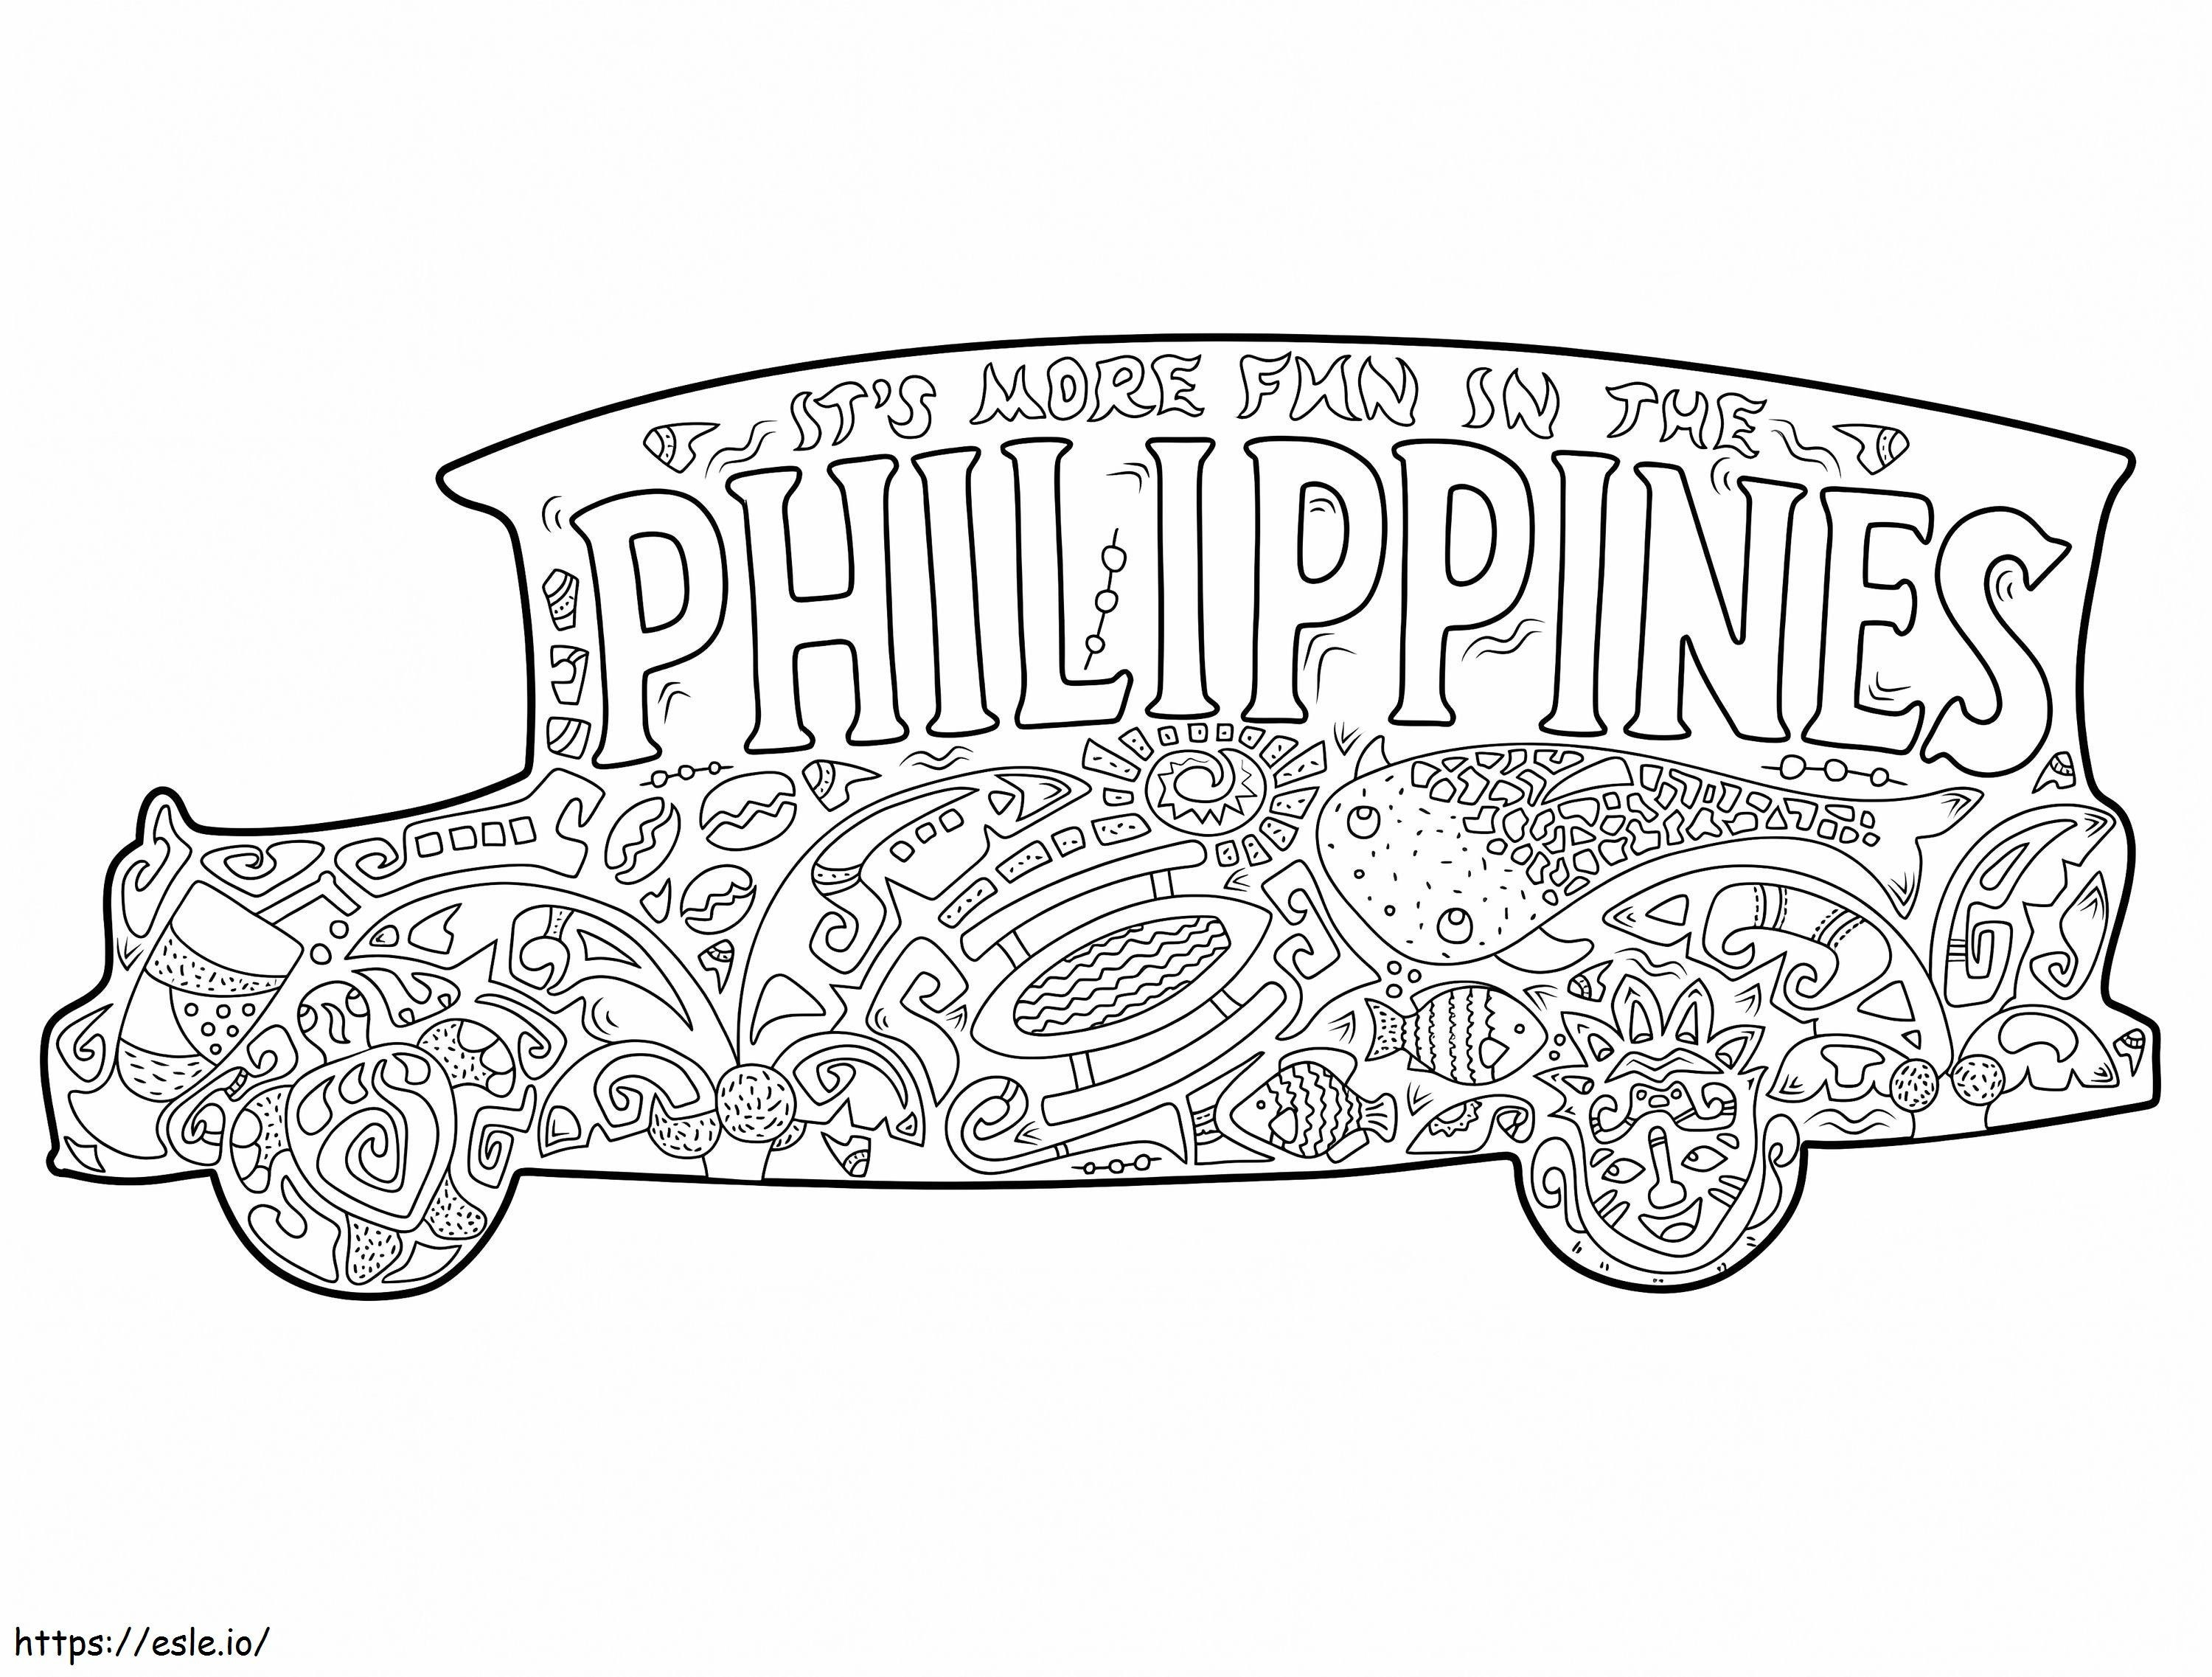 Filipinas Jeepney para colorear